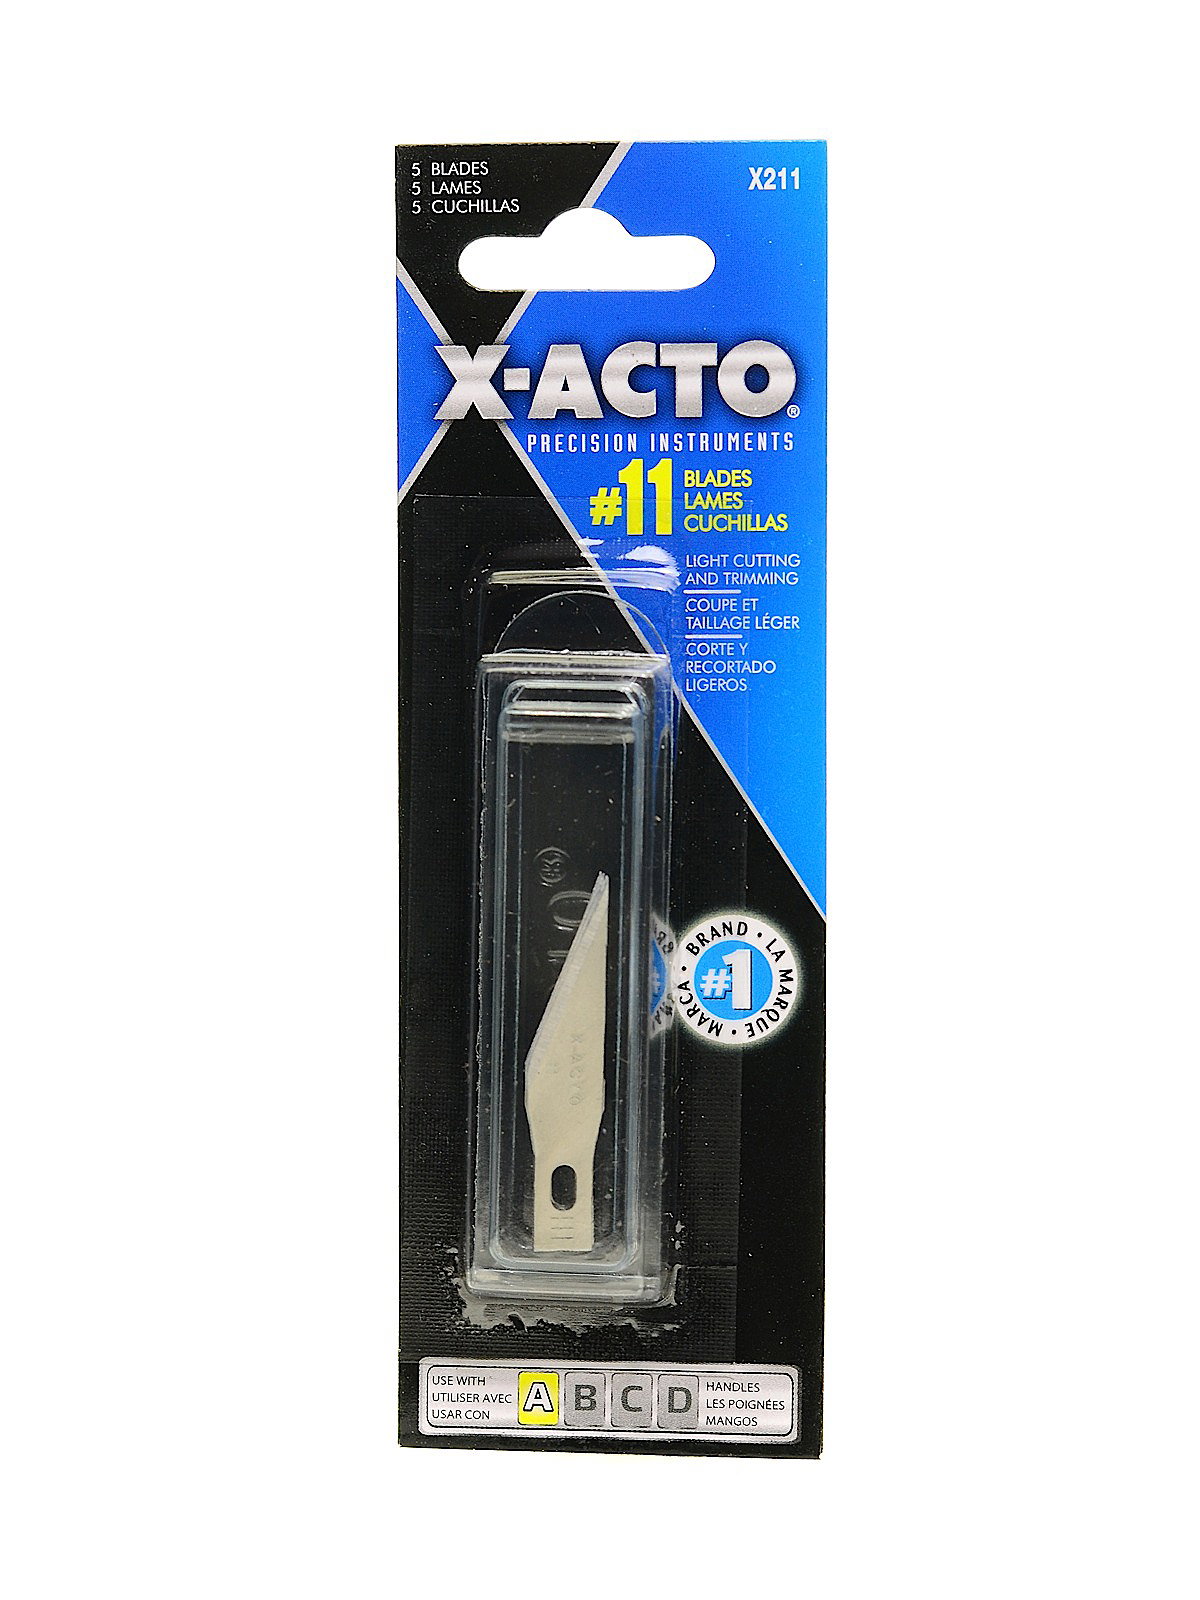 Xacto blades, 100 each